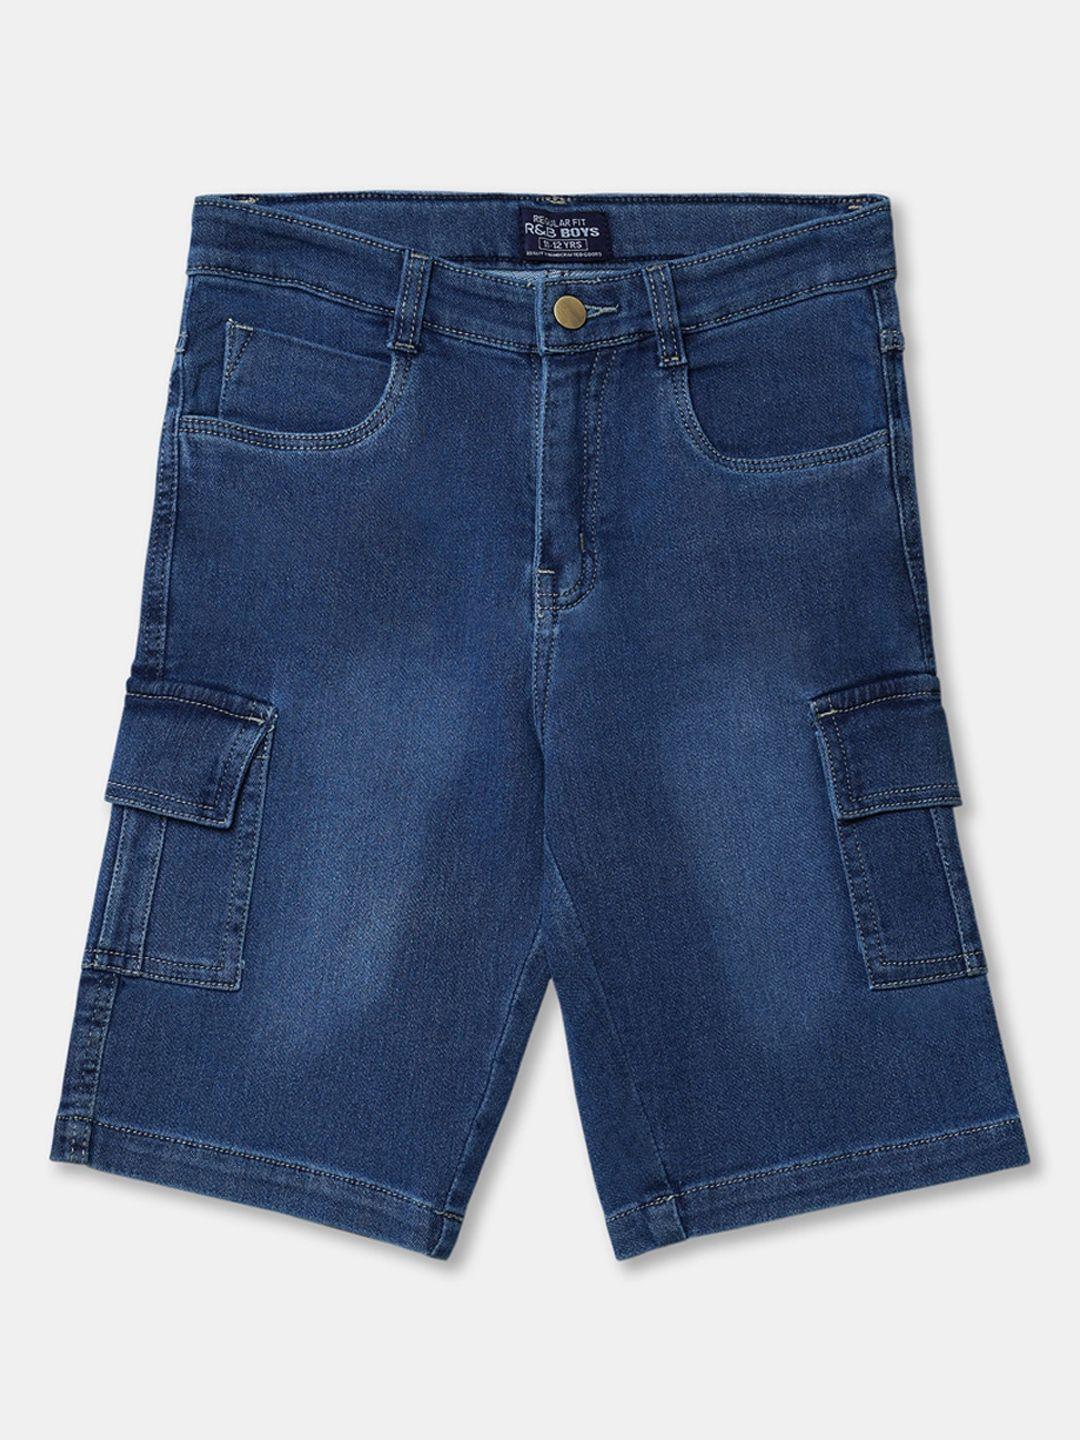 r&b kids boys blue washed denim casual shorts